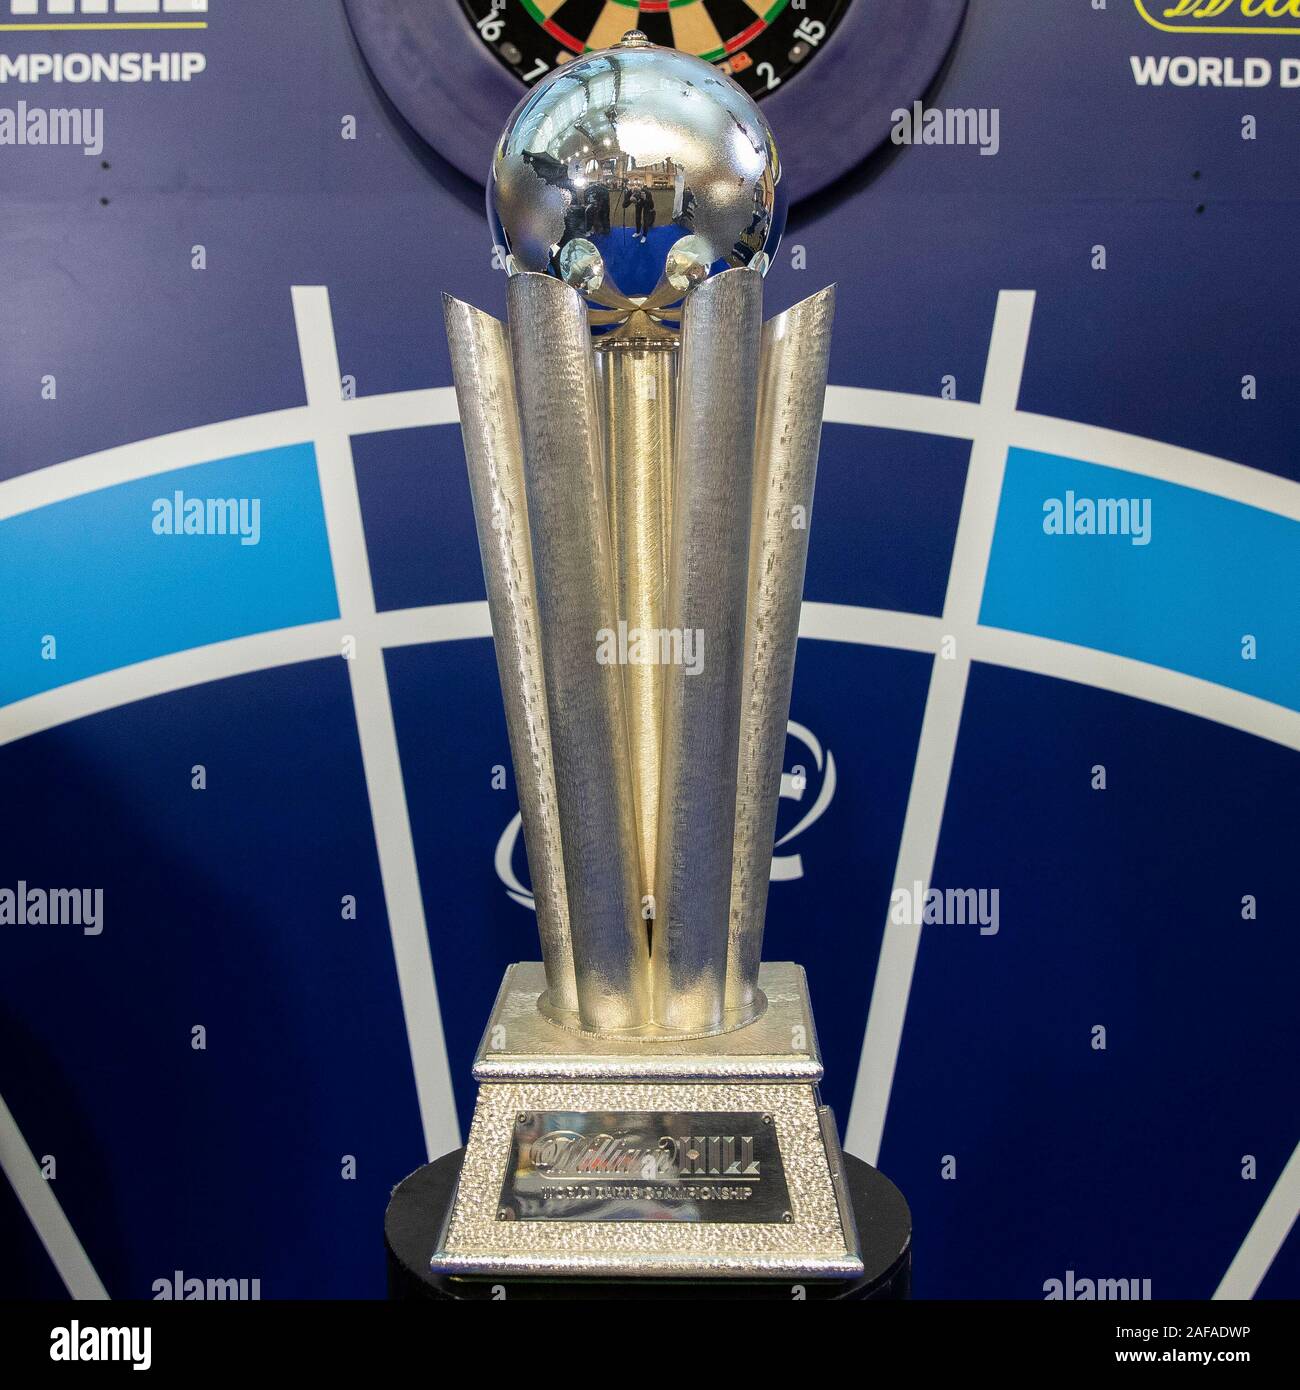 ødemark bekræft venligst lidenskabelig Pdc darts world championship trophy hi-res stock photography and images -  Alamy